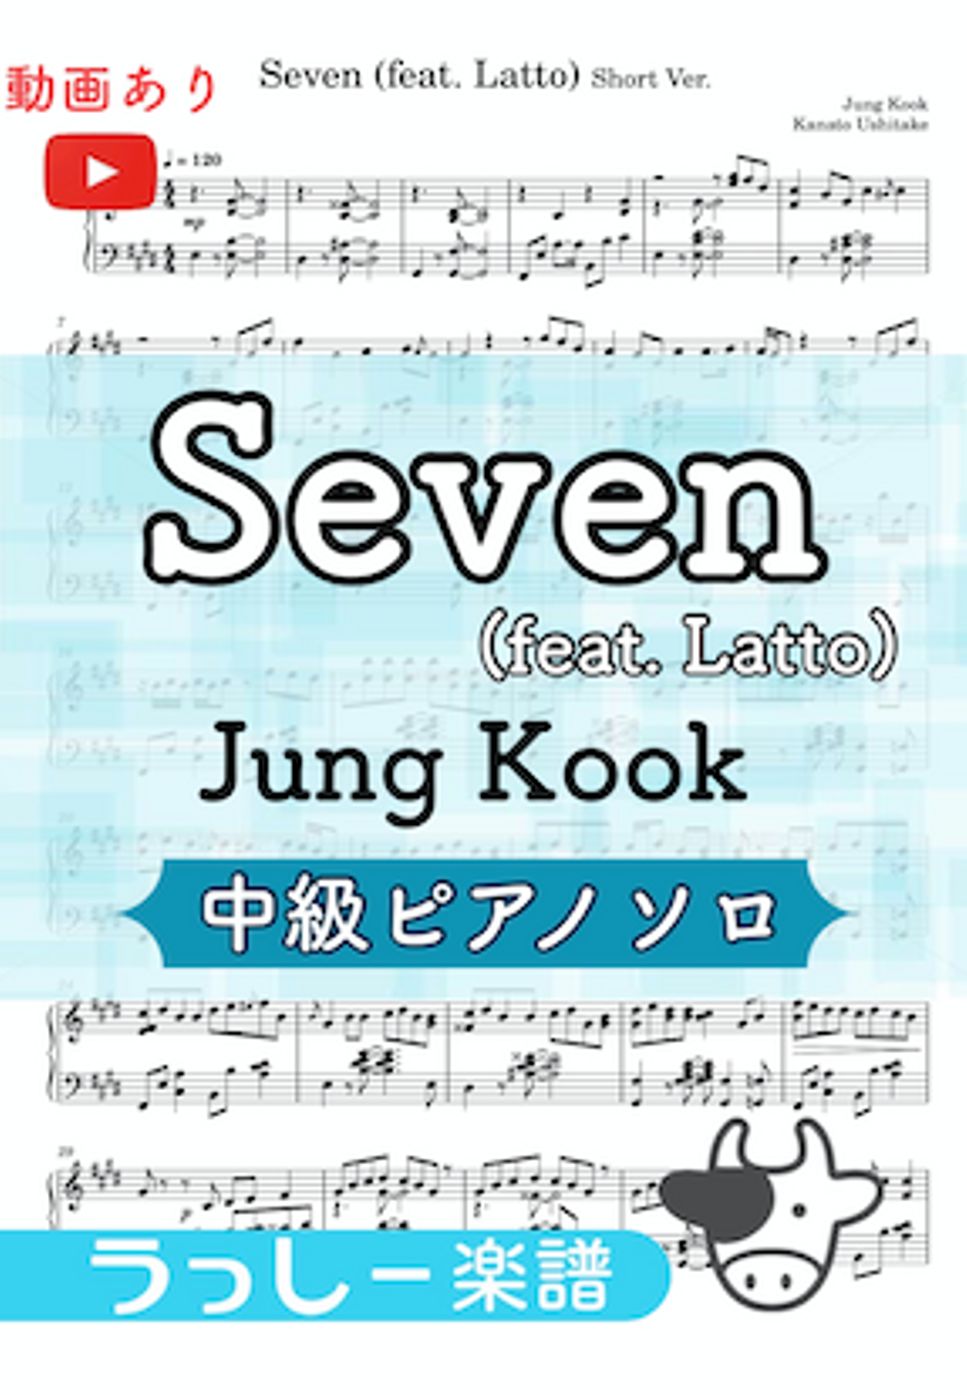 ジョングク - Seven (ピアノ/中級) by 牛武奏人